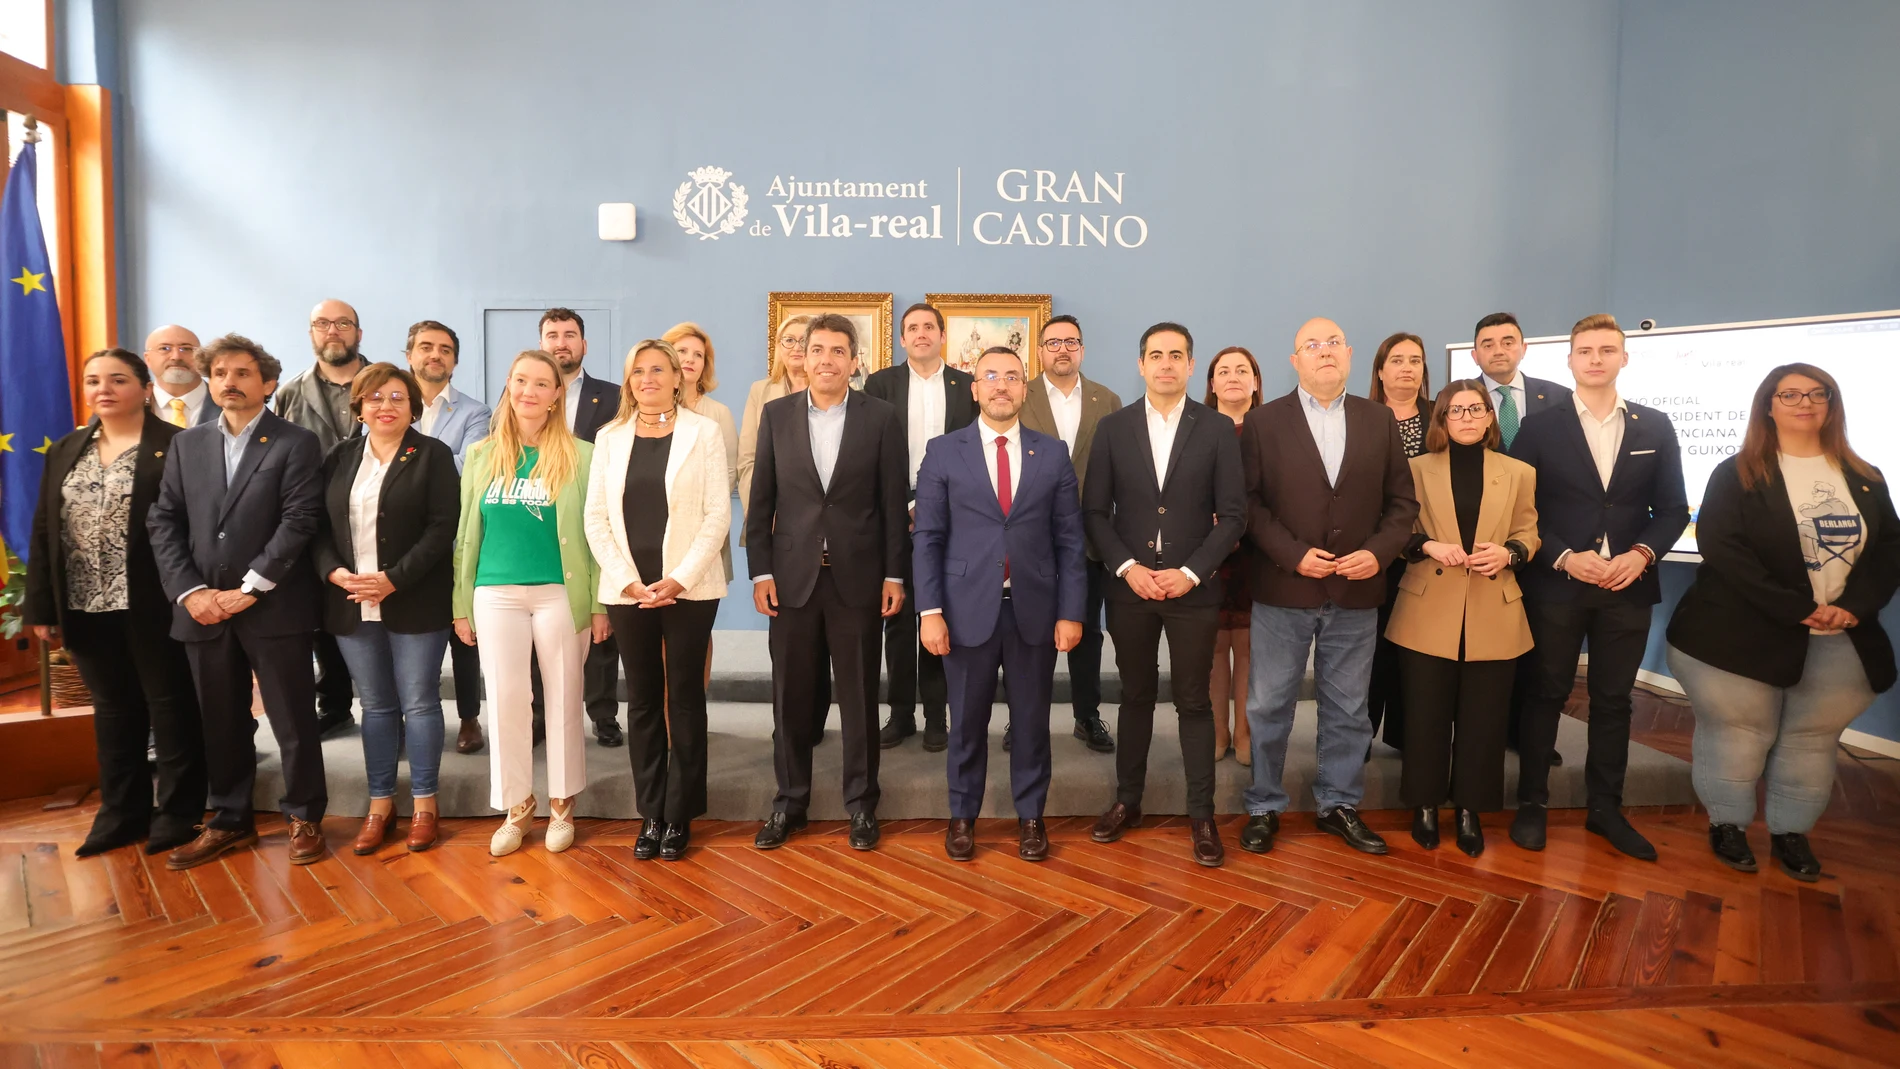 El presidente Mazón, con los miembros del Ayuntamiento de Vila-real